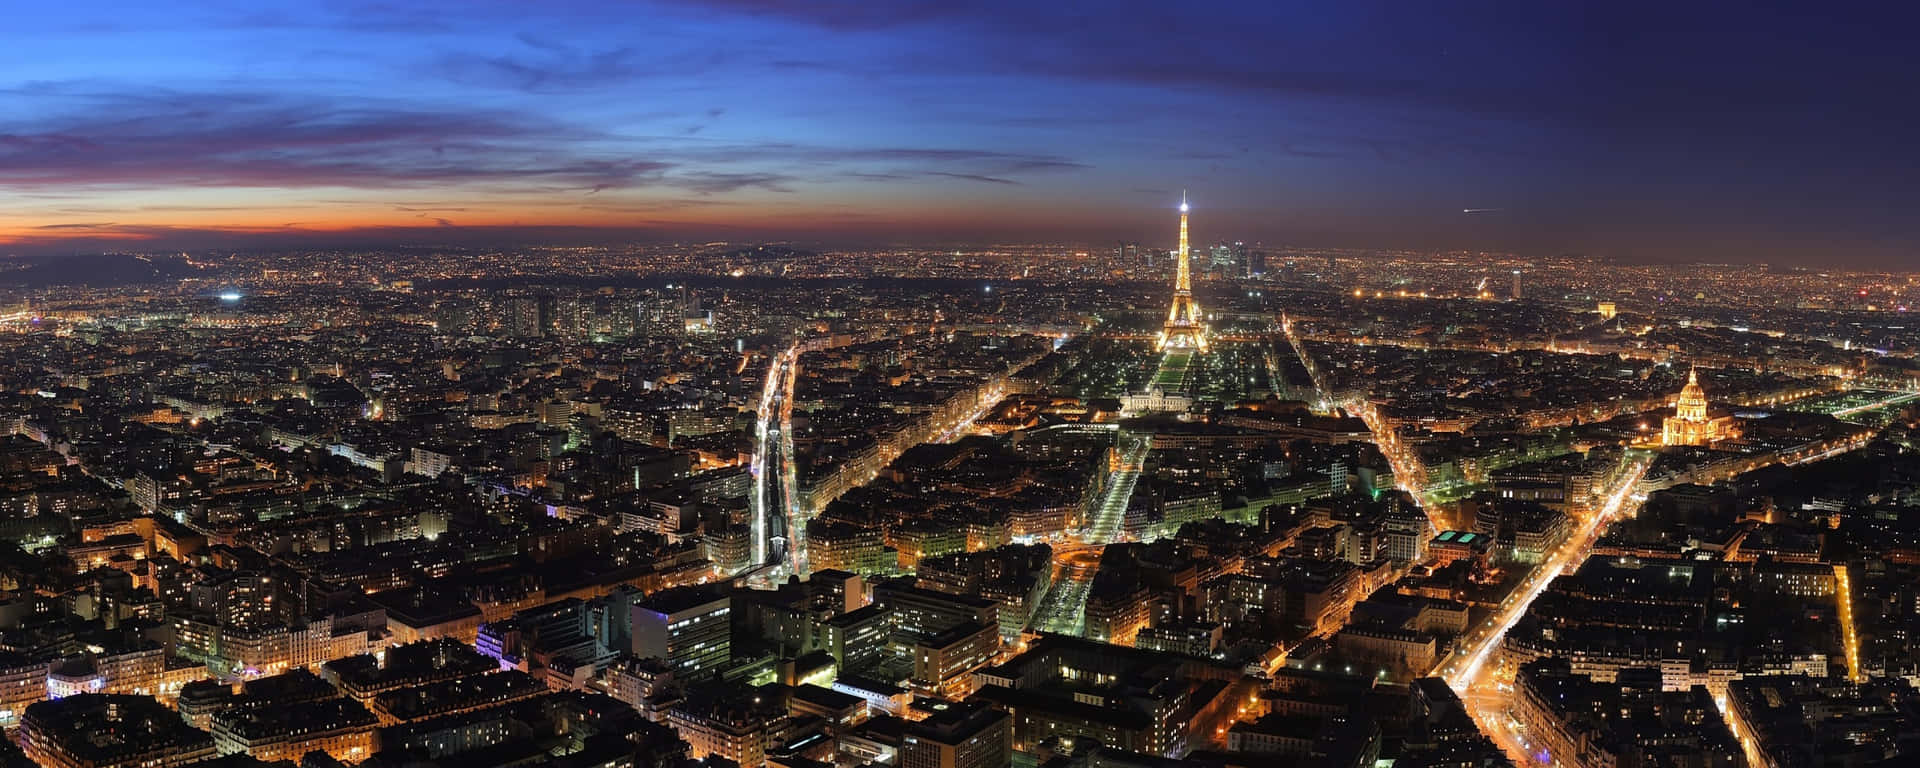 Dereiffelturm Im Mondschein Bei Nacht In Paris, Frankreich Wallpaper